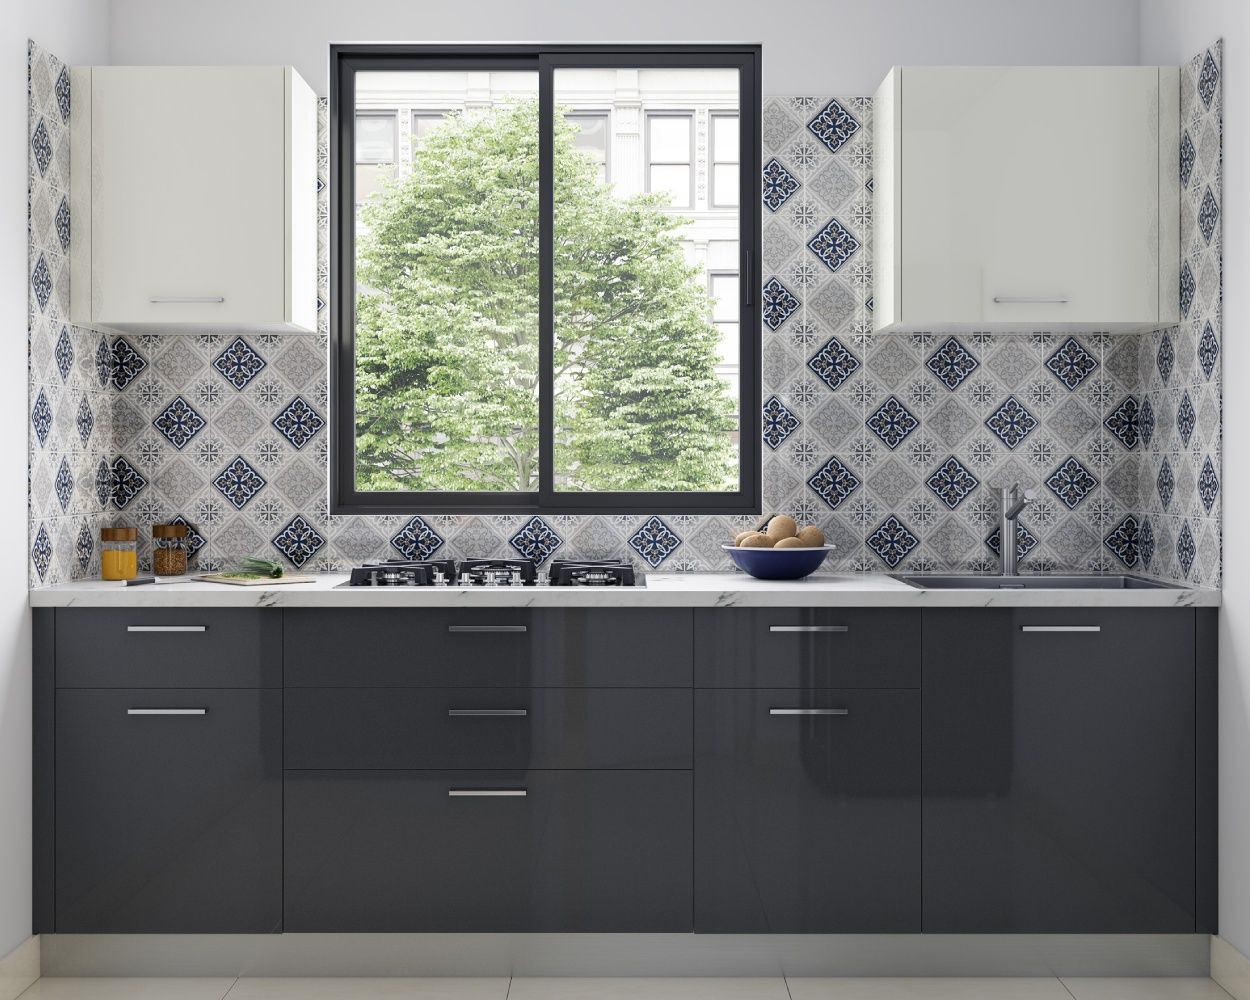 Modern Aluminium Black Sliding Window Design For Kitchens